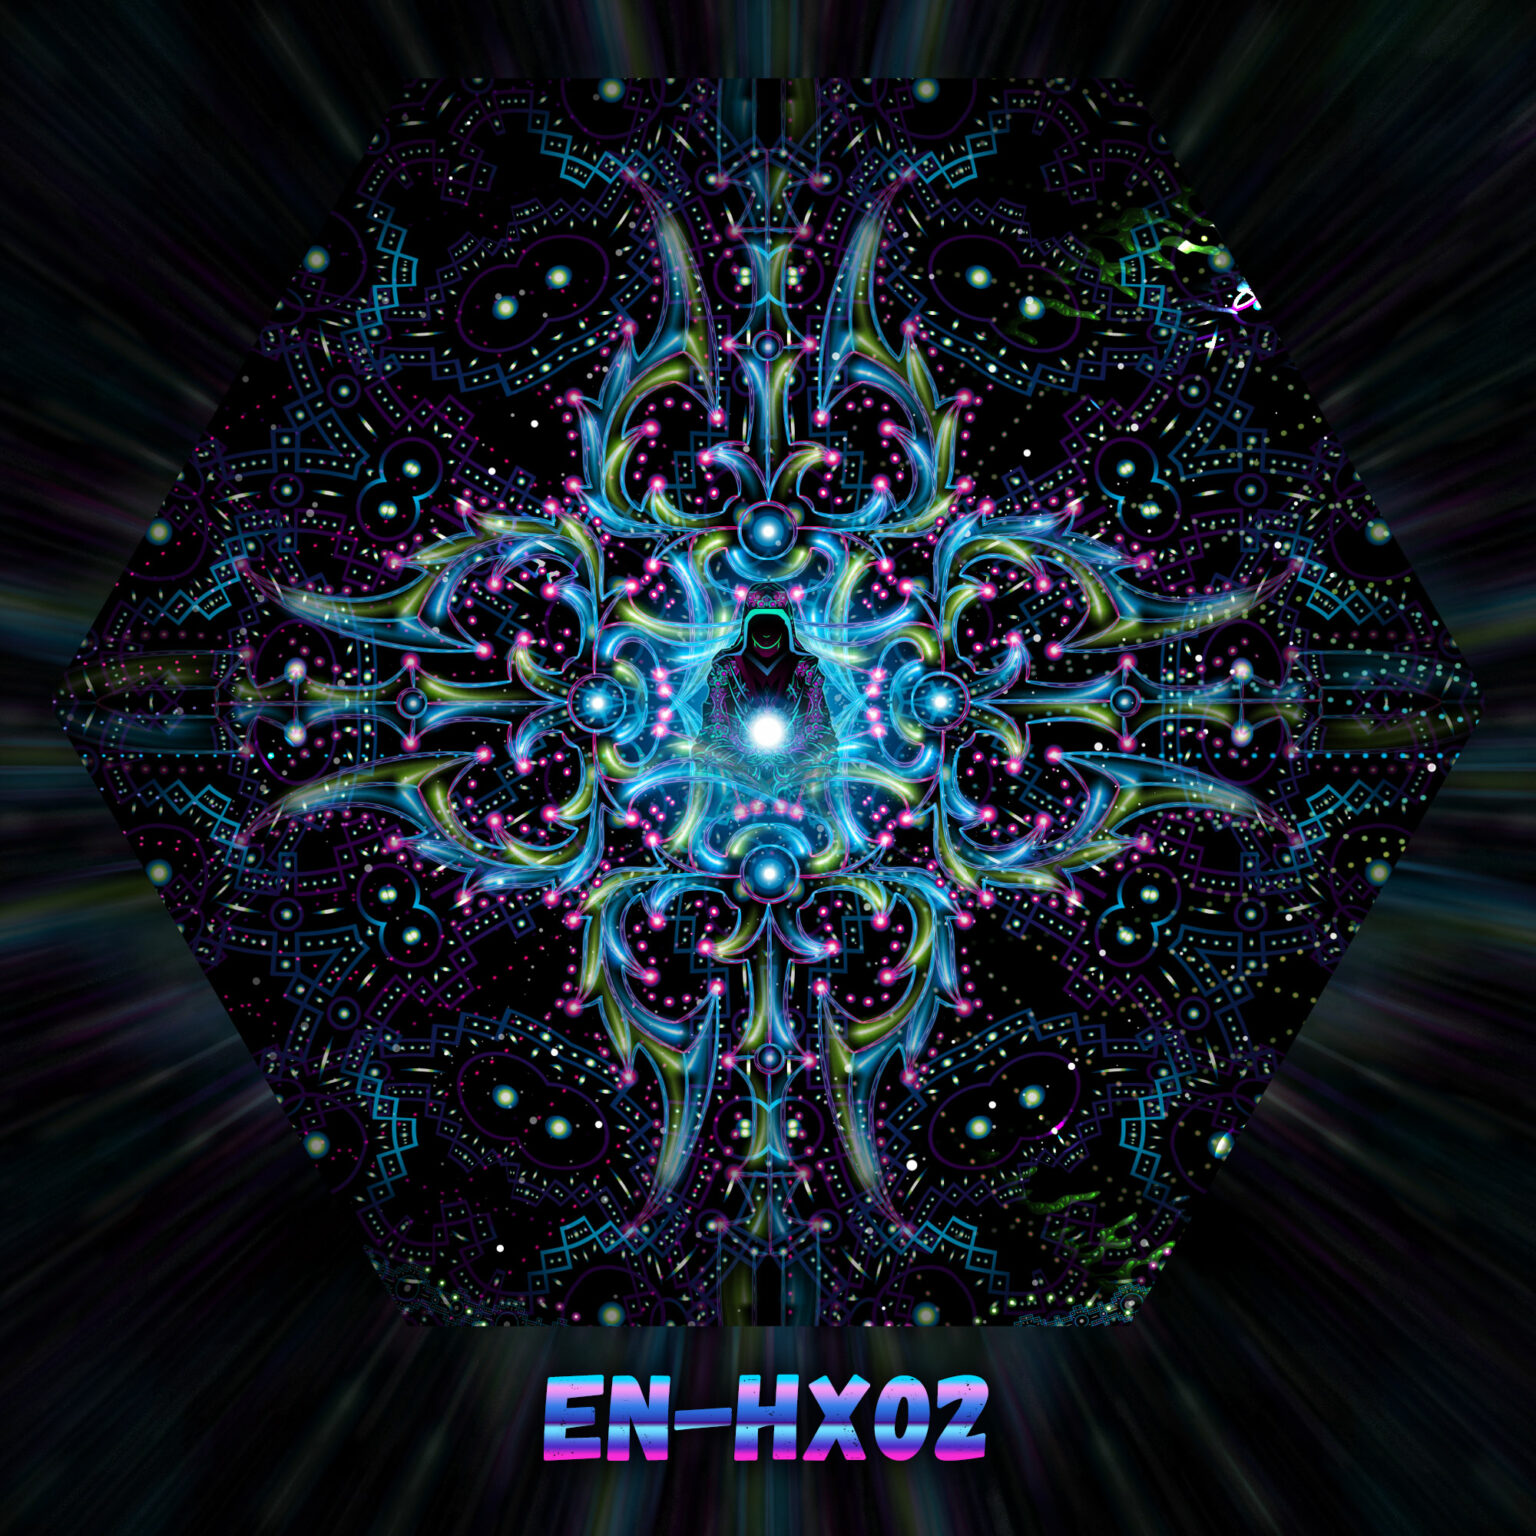 EN-HX02 - Enlightenment - UV-Hexagon - Design Preview